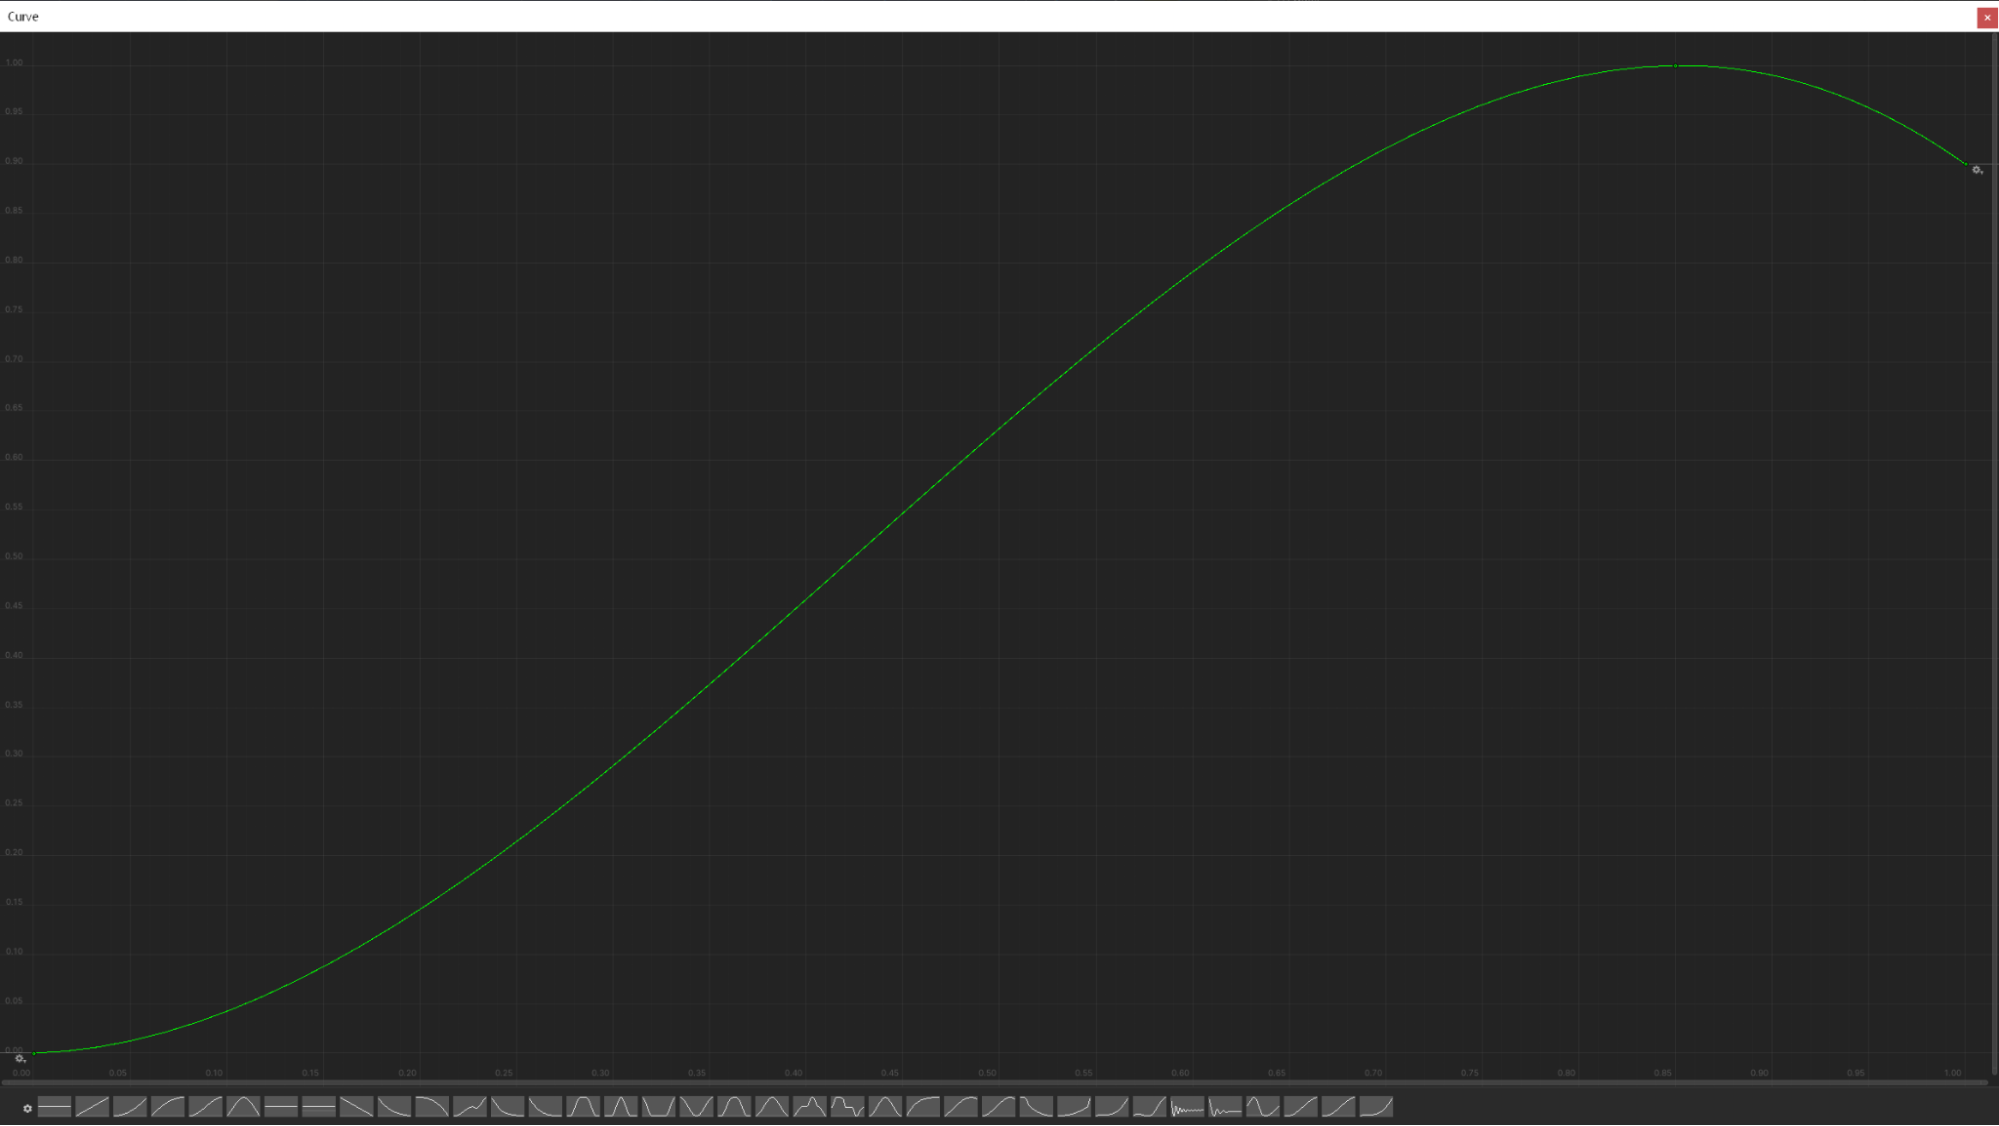 An upwards green curve